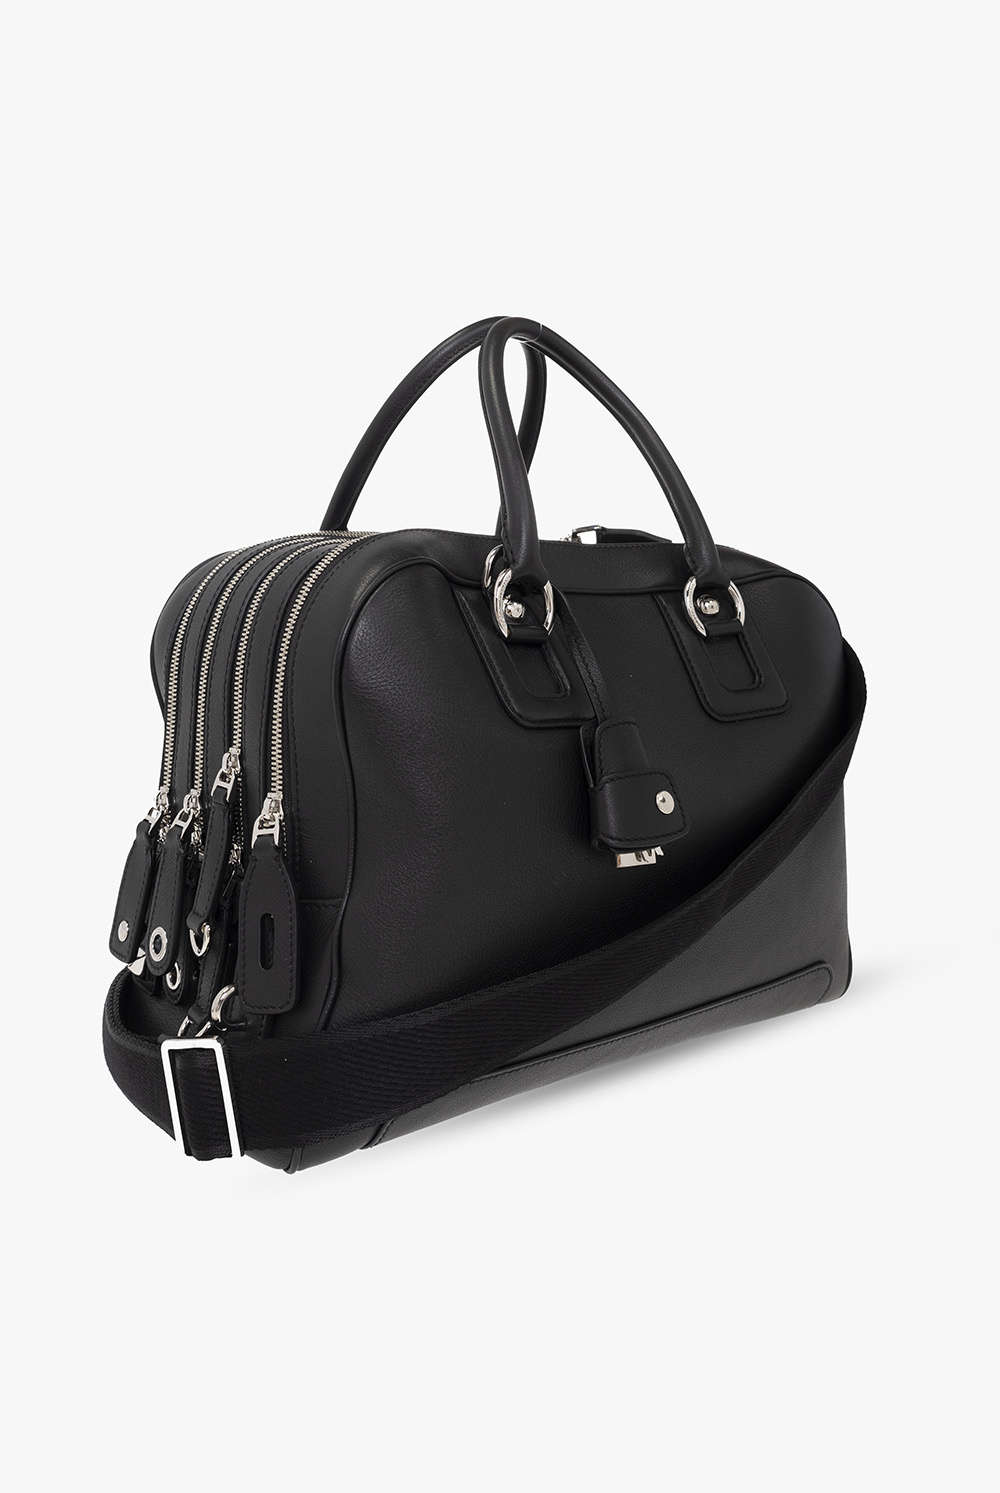 Dolce & Gabbana Leather shoulder bag